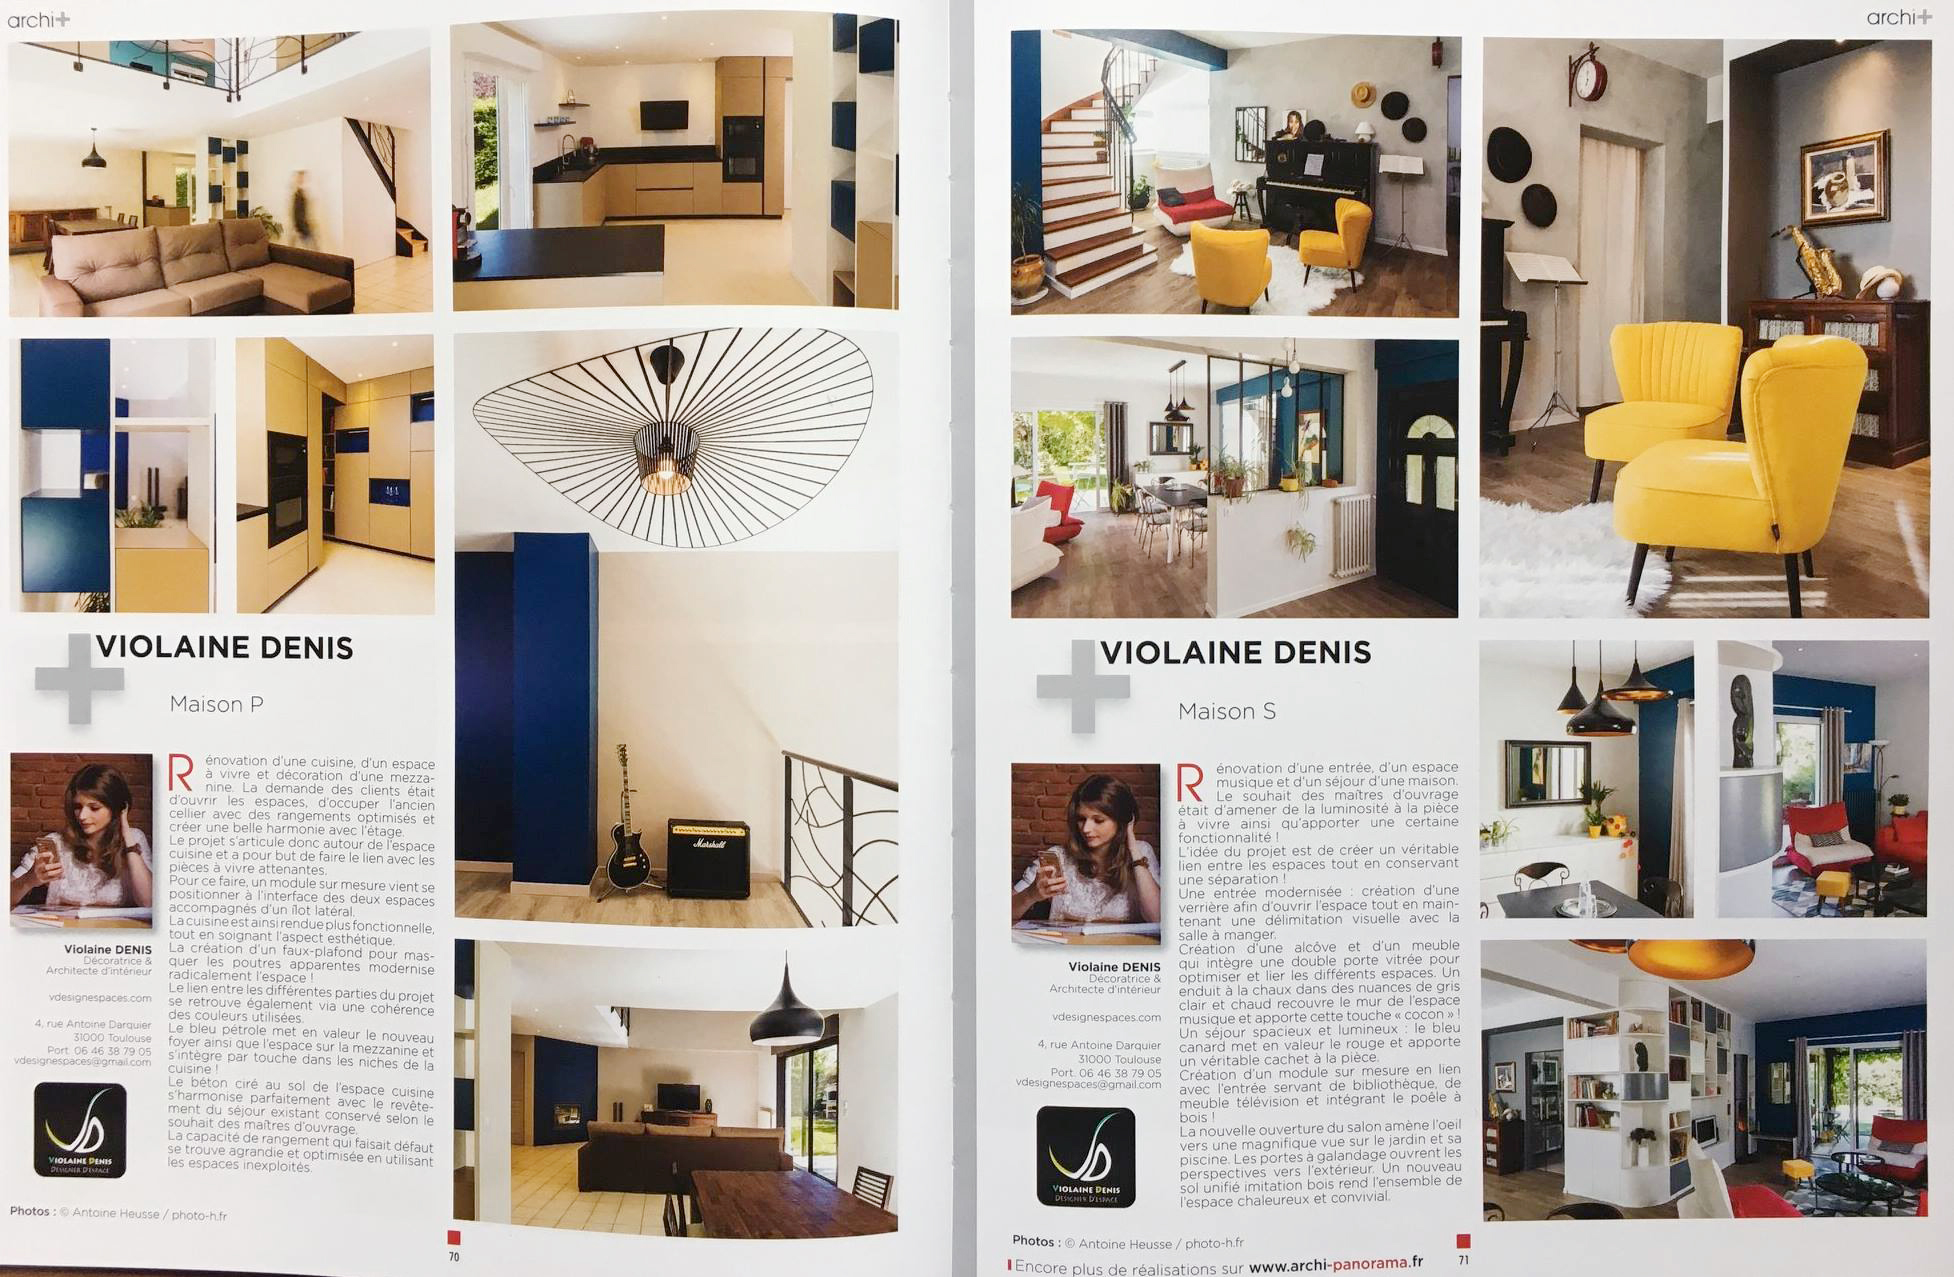 Photographies d'architecture d'Antoine Heusse dans le magazine Archi+